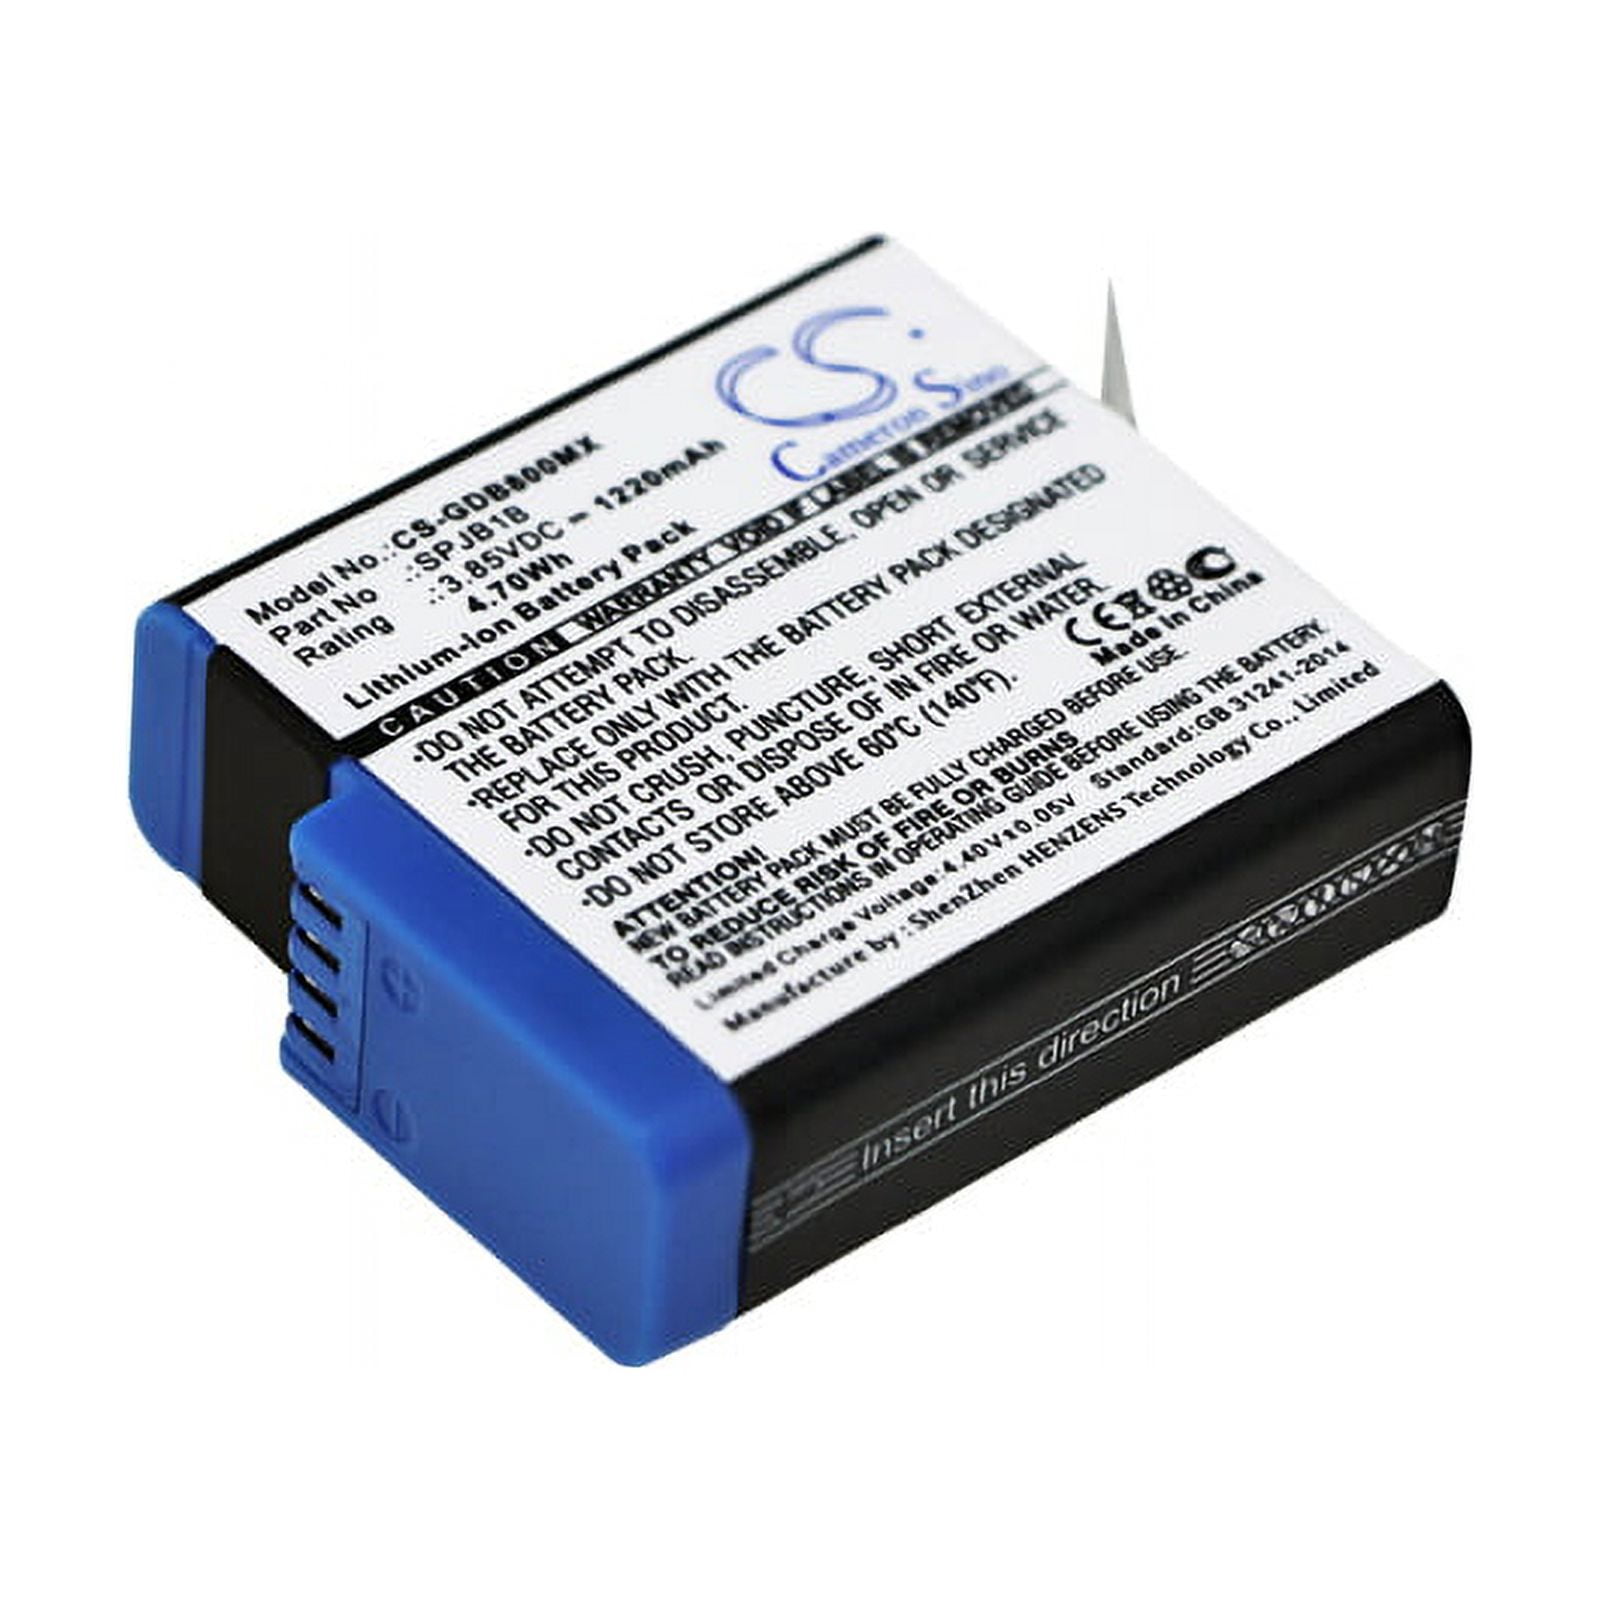 AHDBT-801 1220mAh Batterie Rechargeable Pour GoPro Hero 8/7/6/5